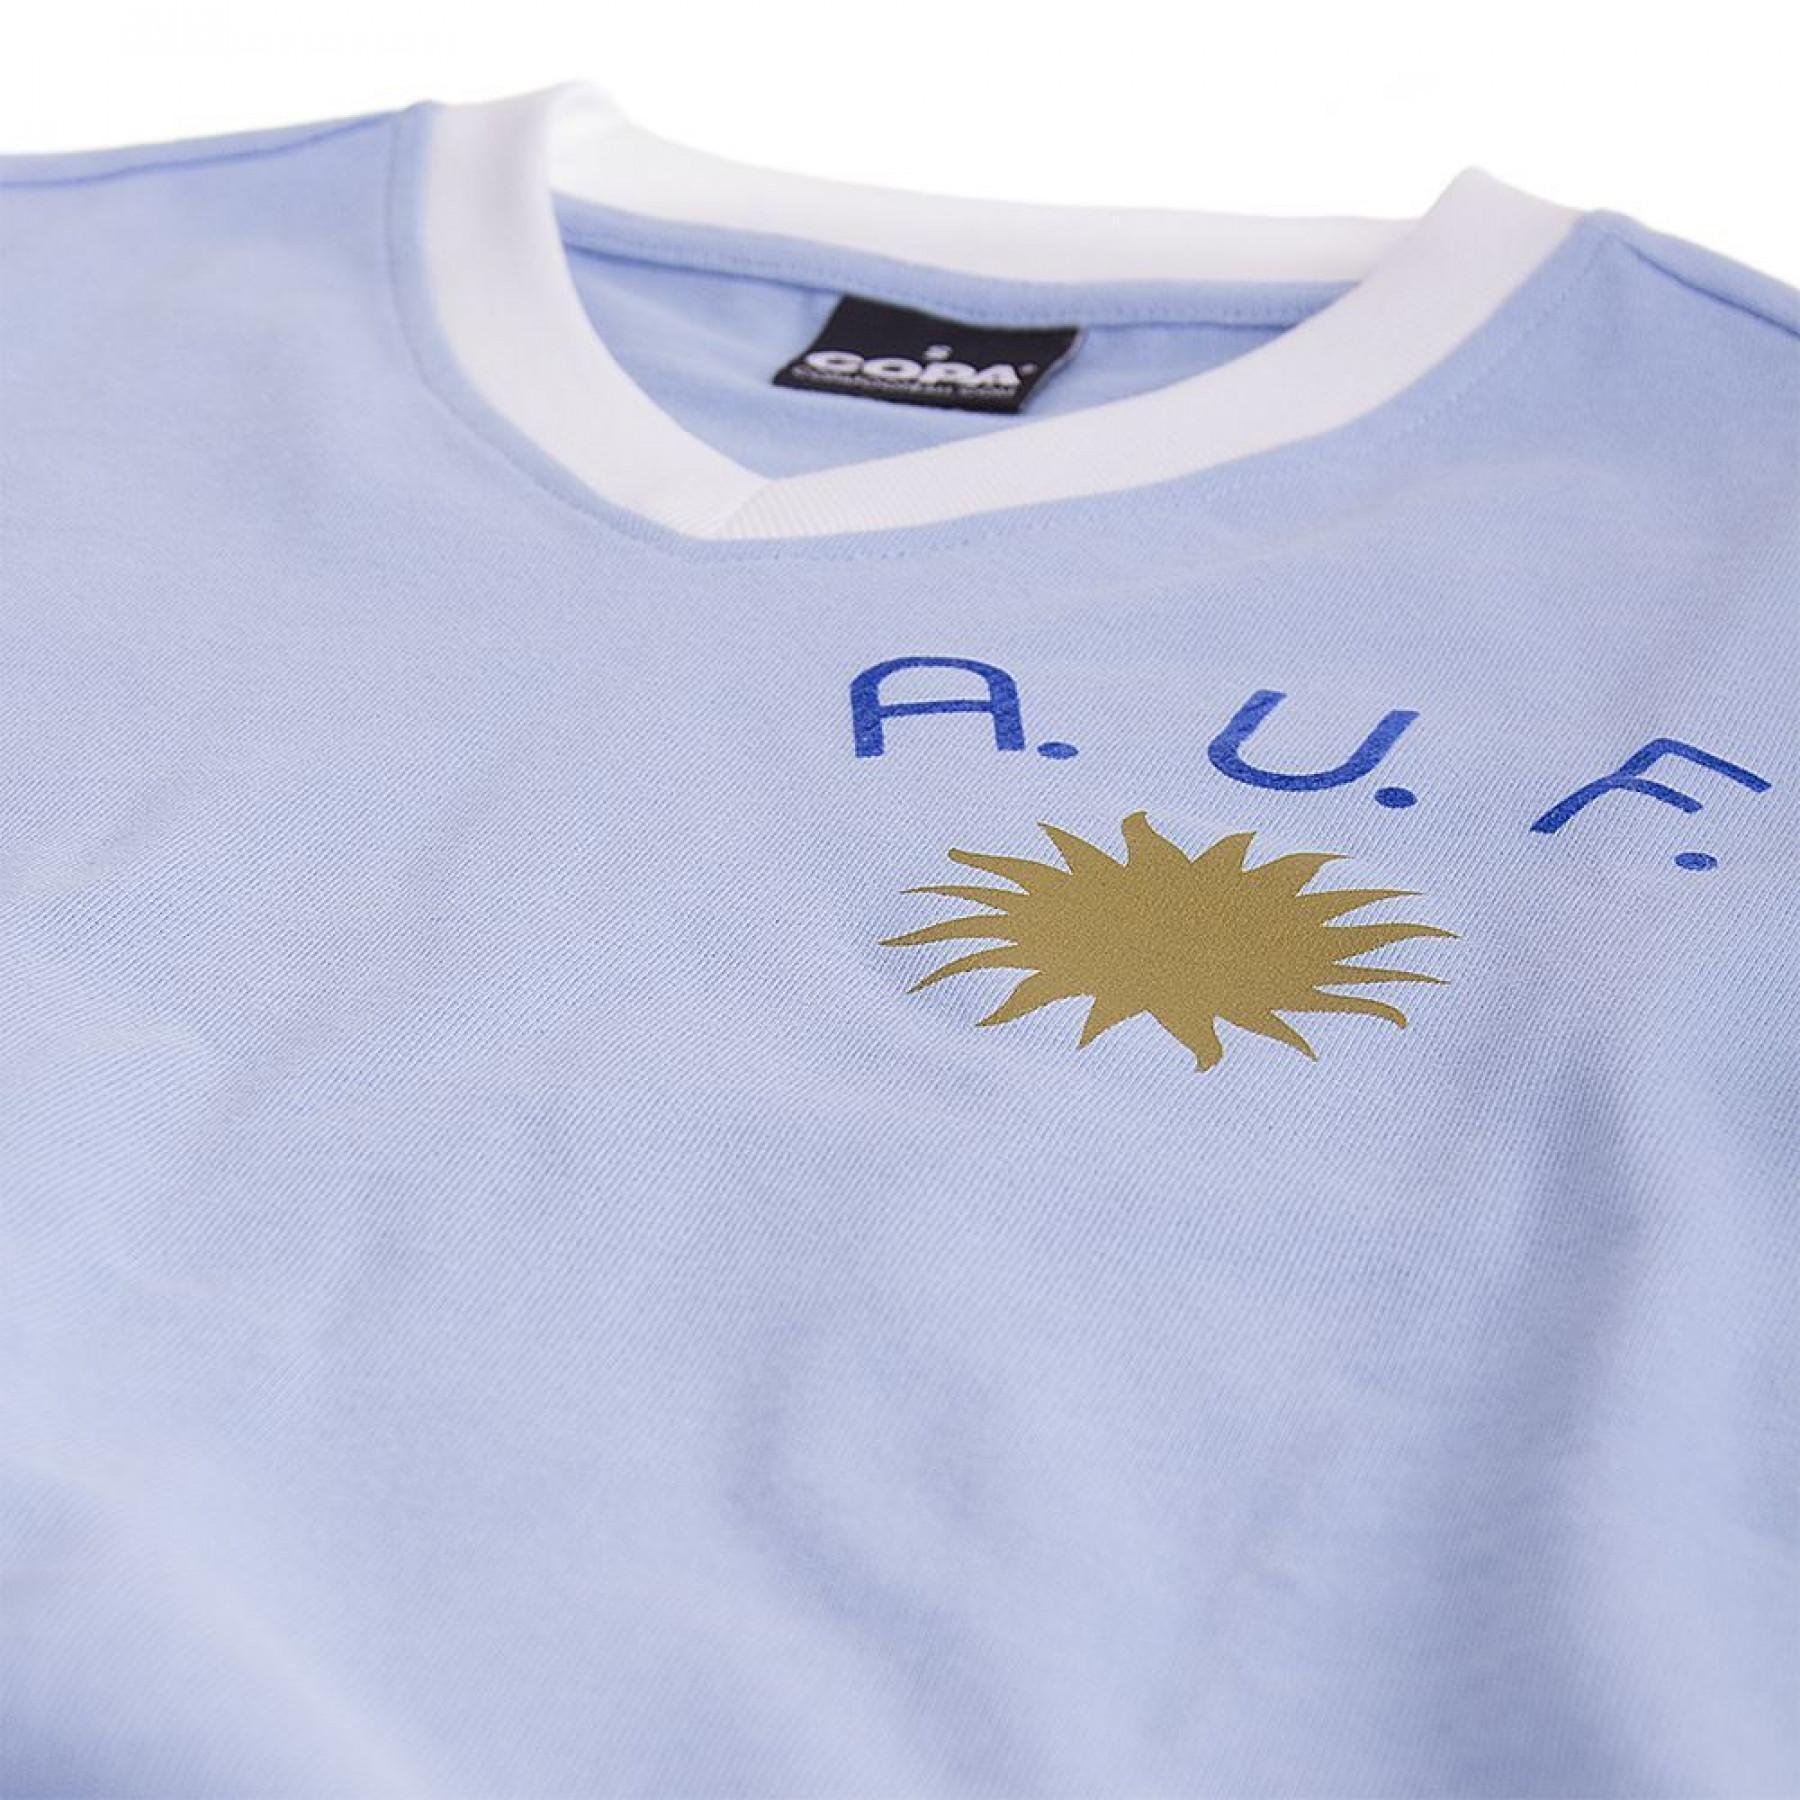 Camiseta primera equipación Uruguay 1970’s